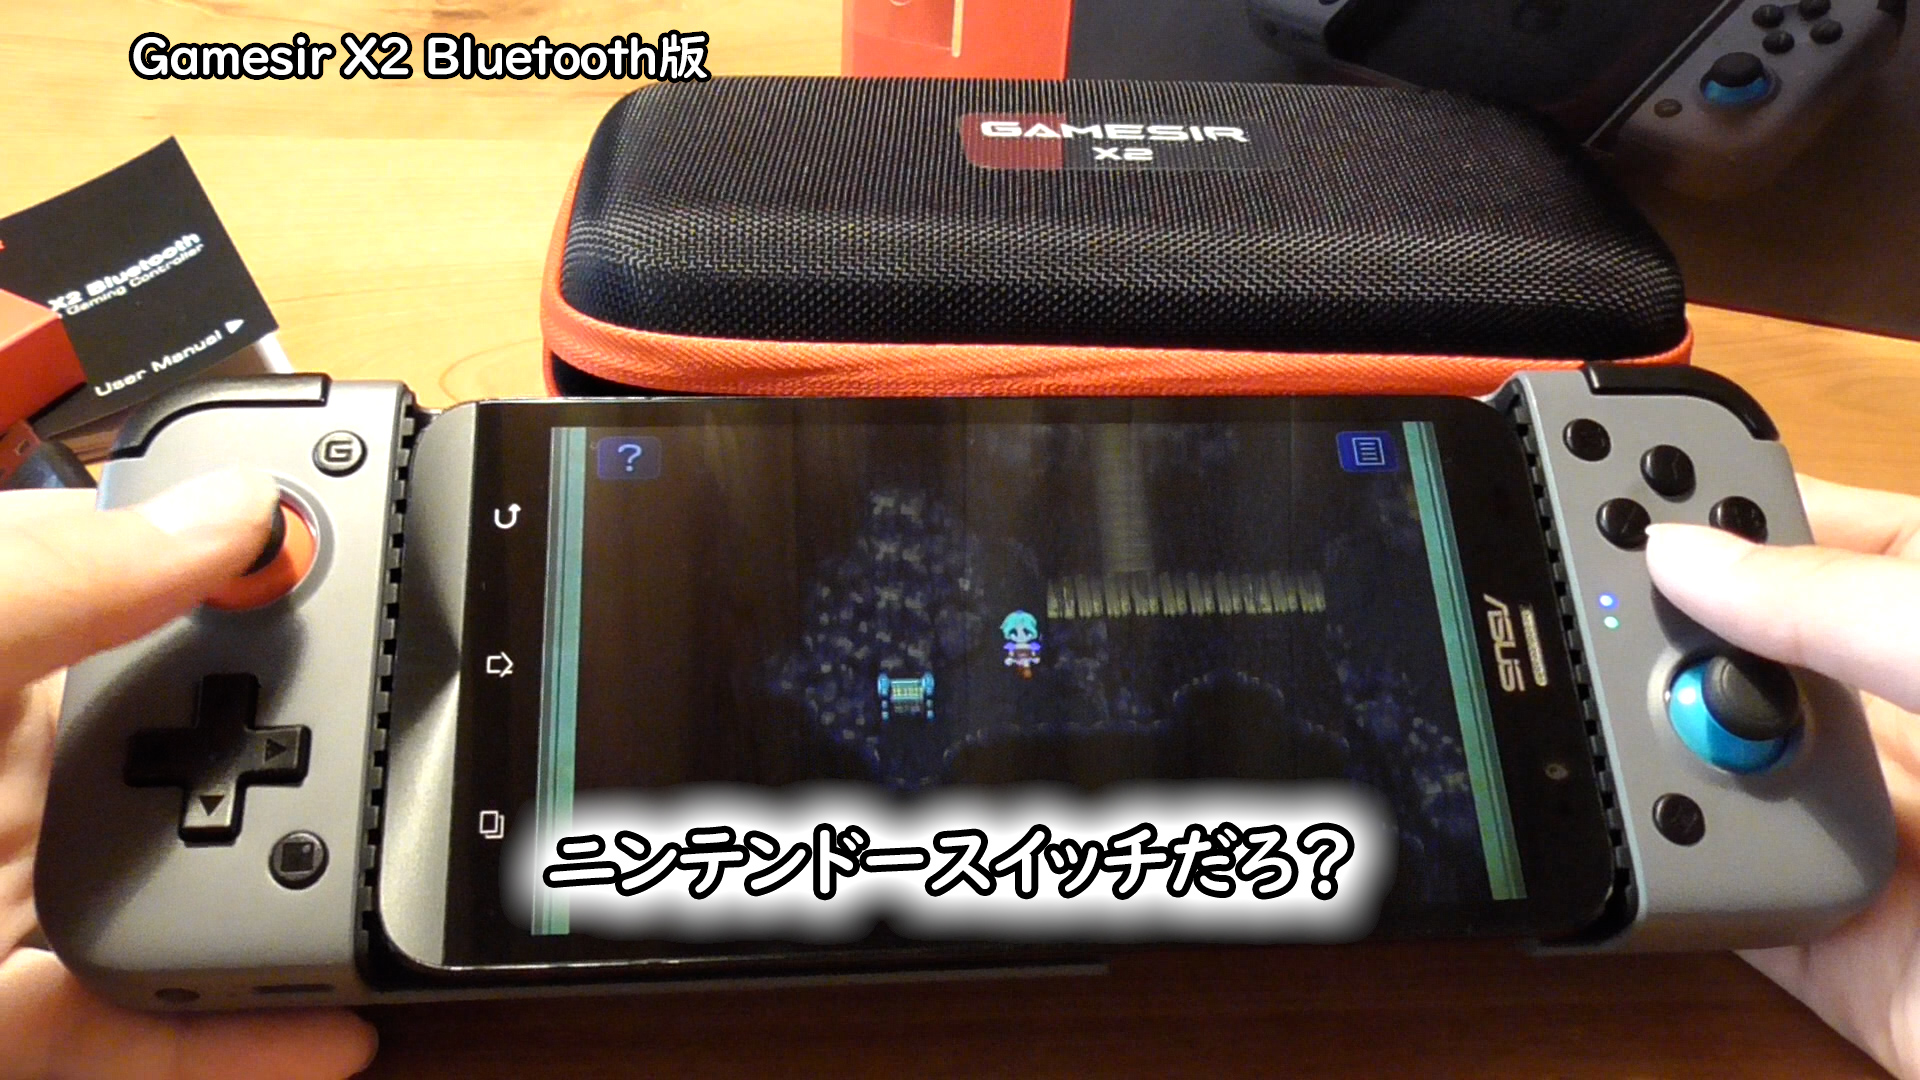 gamesir x2 bluetooth mobile gaming controller